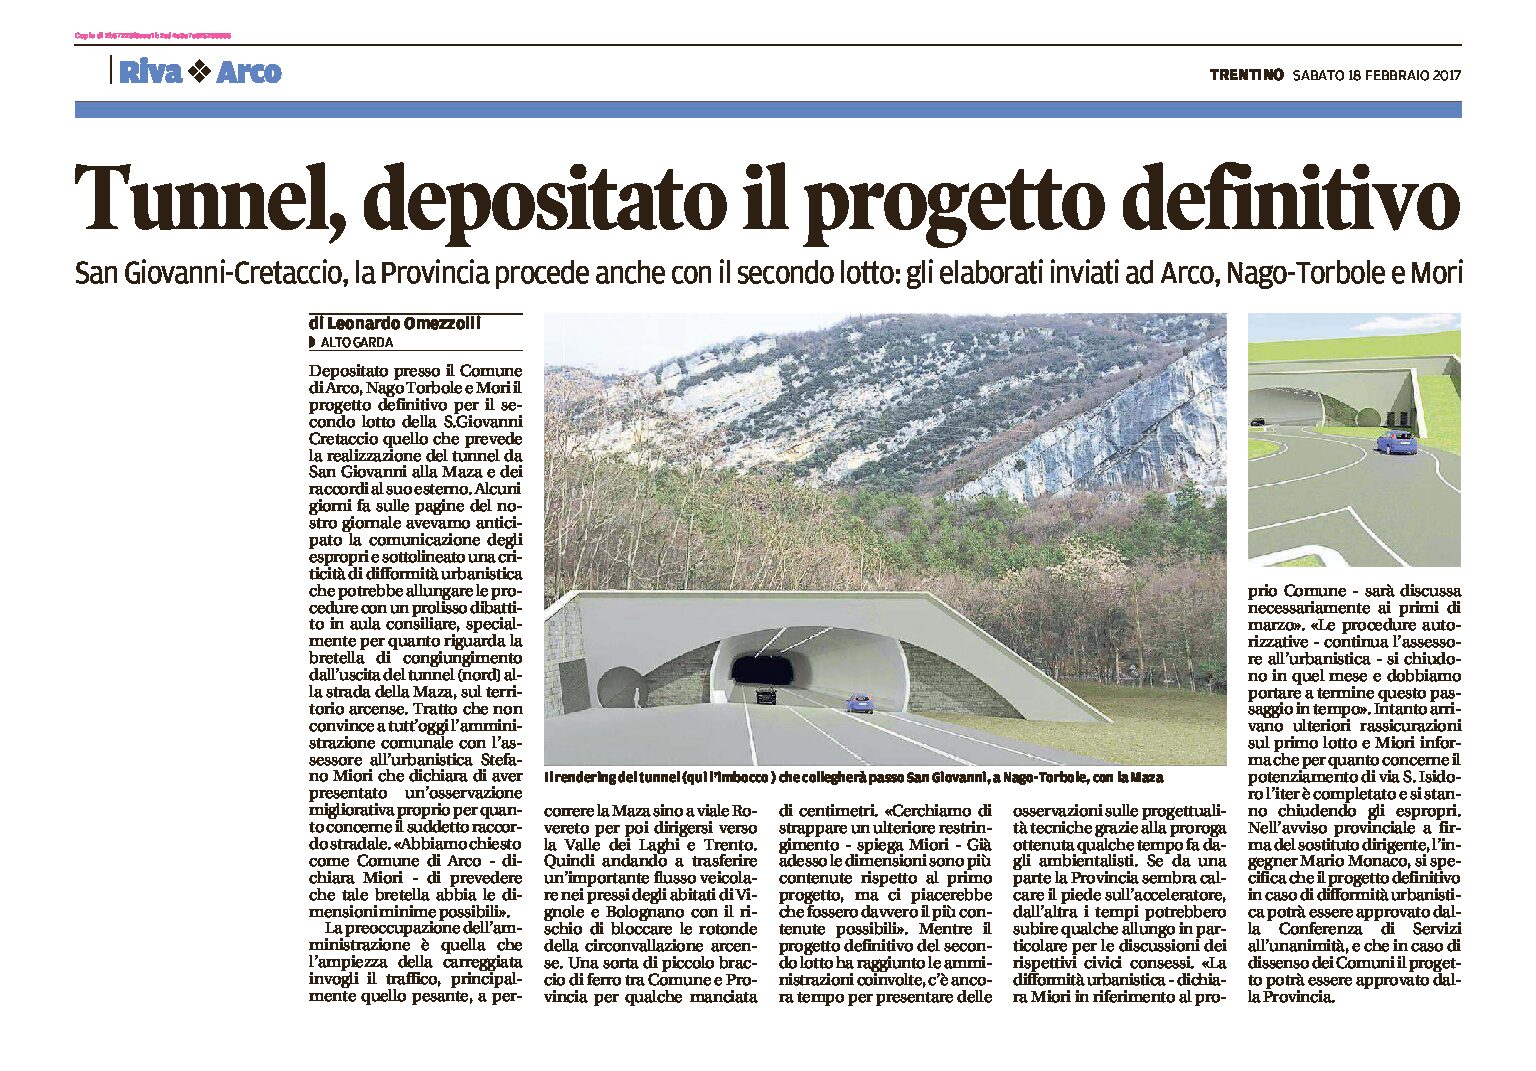 Tunnel San Giovanni-Cretaccio: depositato il progetto definitivo.